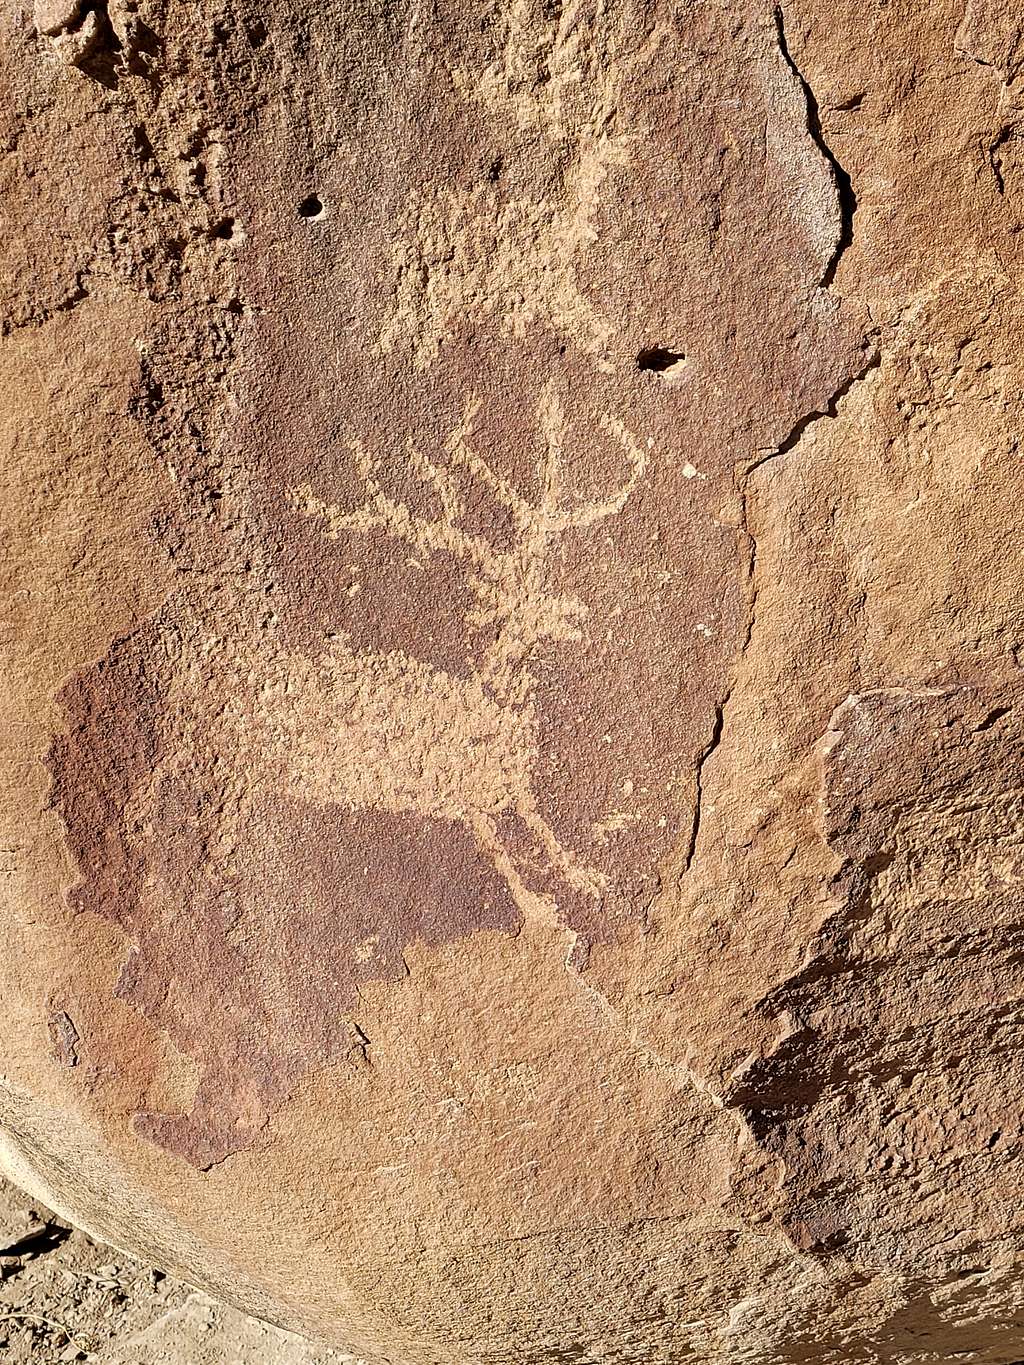 Petroglyphs near the Palisade Rim Trail